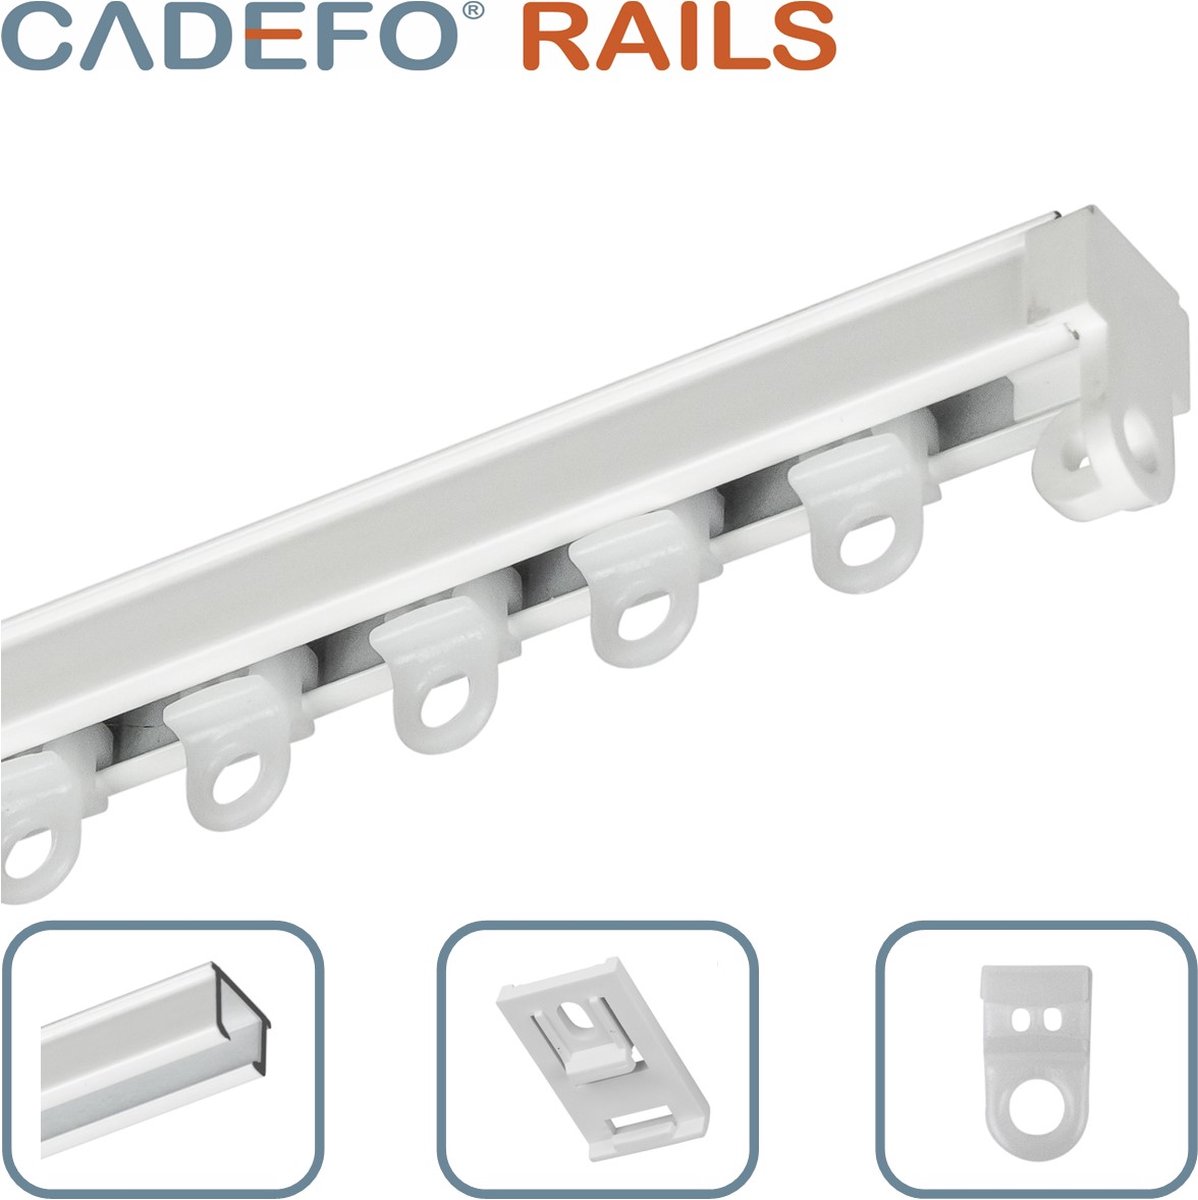 CADEFO RAILS (401 - 450 cm) Gordijnrails - Compleet op maat! - UIT 1 STUK - Leverbaar tot 6 meter - Plafondbevestiging - Lengte 441 cm